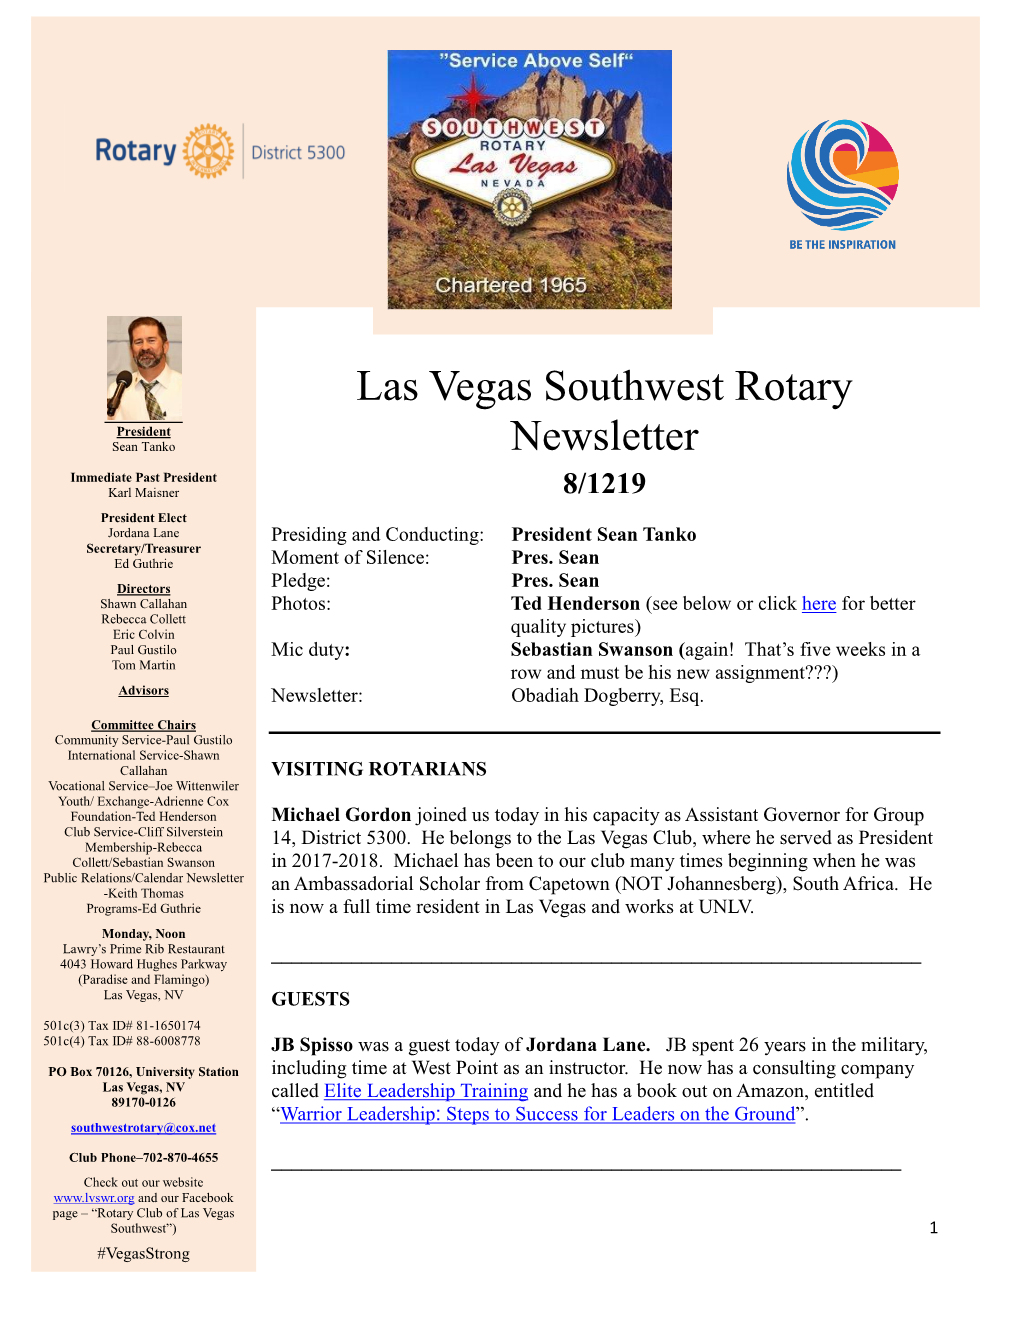 Las Vegas Southwest Rotary Newsletter